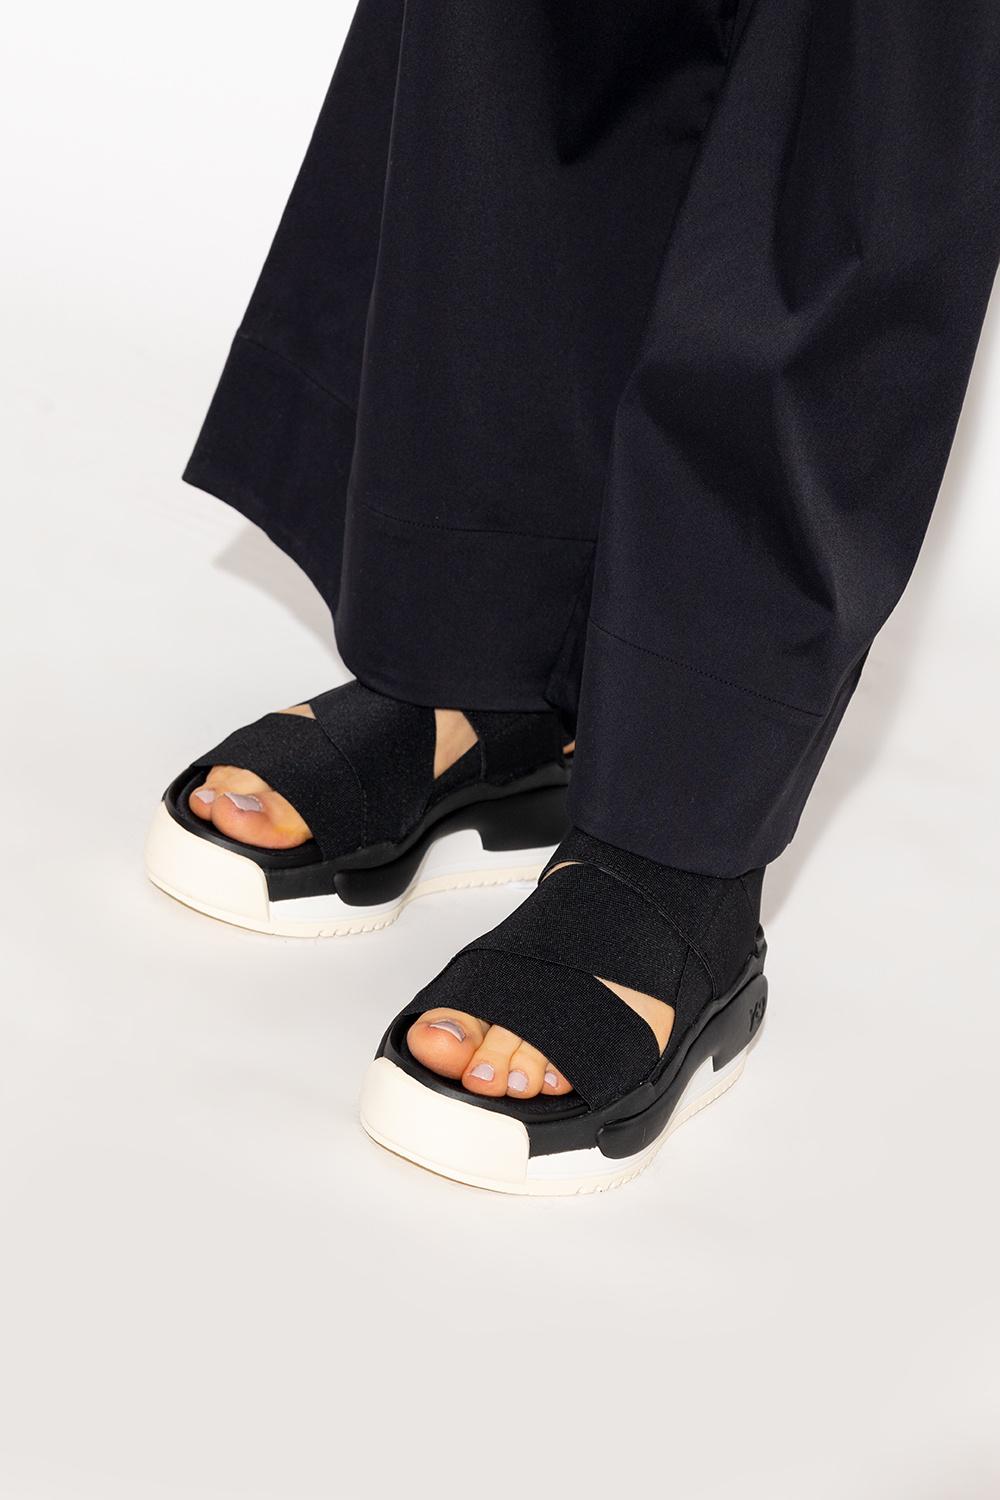 Y-3 'hokori' Sandals in Black | Lyst Canada